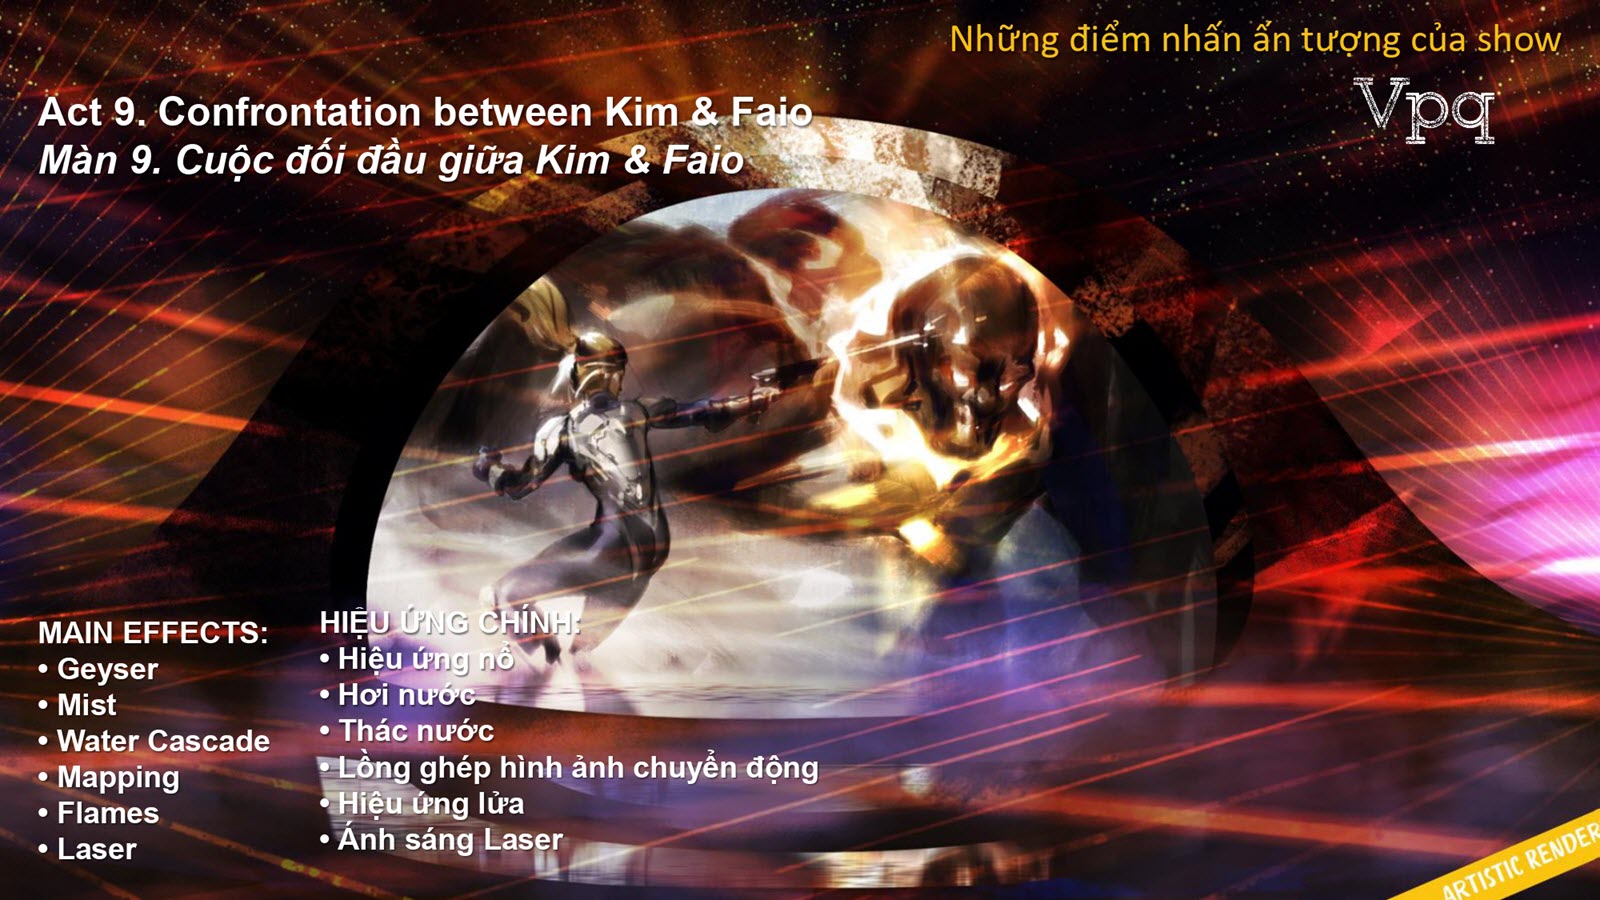 Màn 9: Cuộc đối đầu giữa Kim & Faio